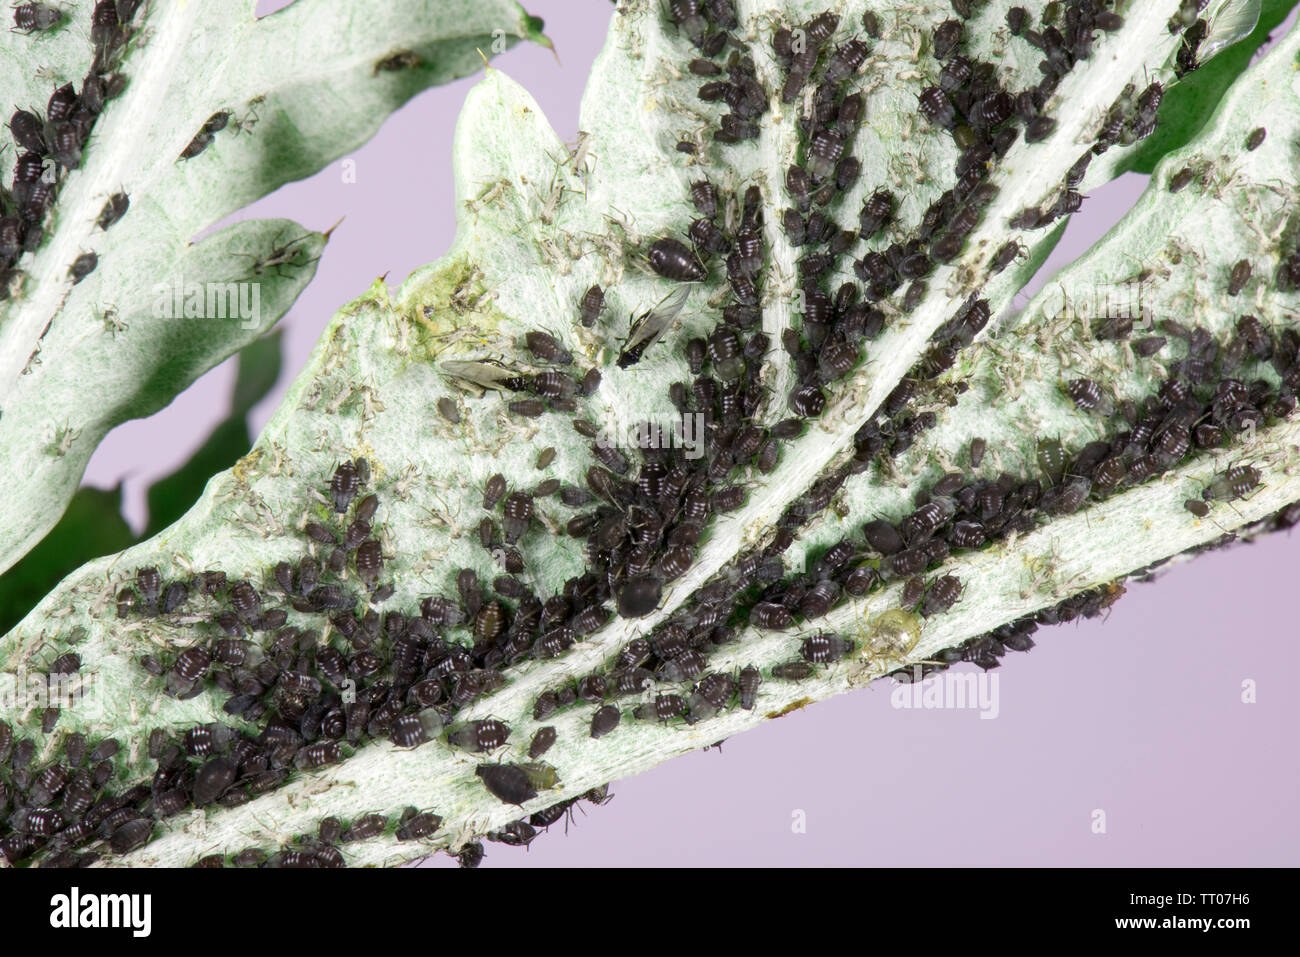 Puceron noir de la fève, Aphis fabae, sur la feuille d'artichaut infestation diverses étapes et alates, Berkshire, juin Banque D'Images